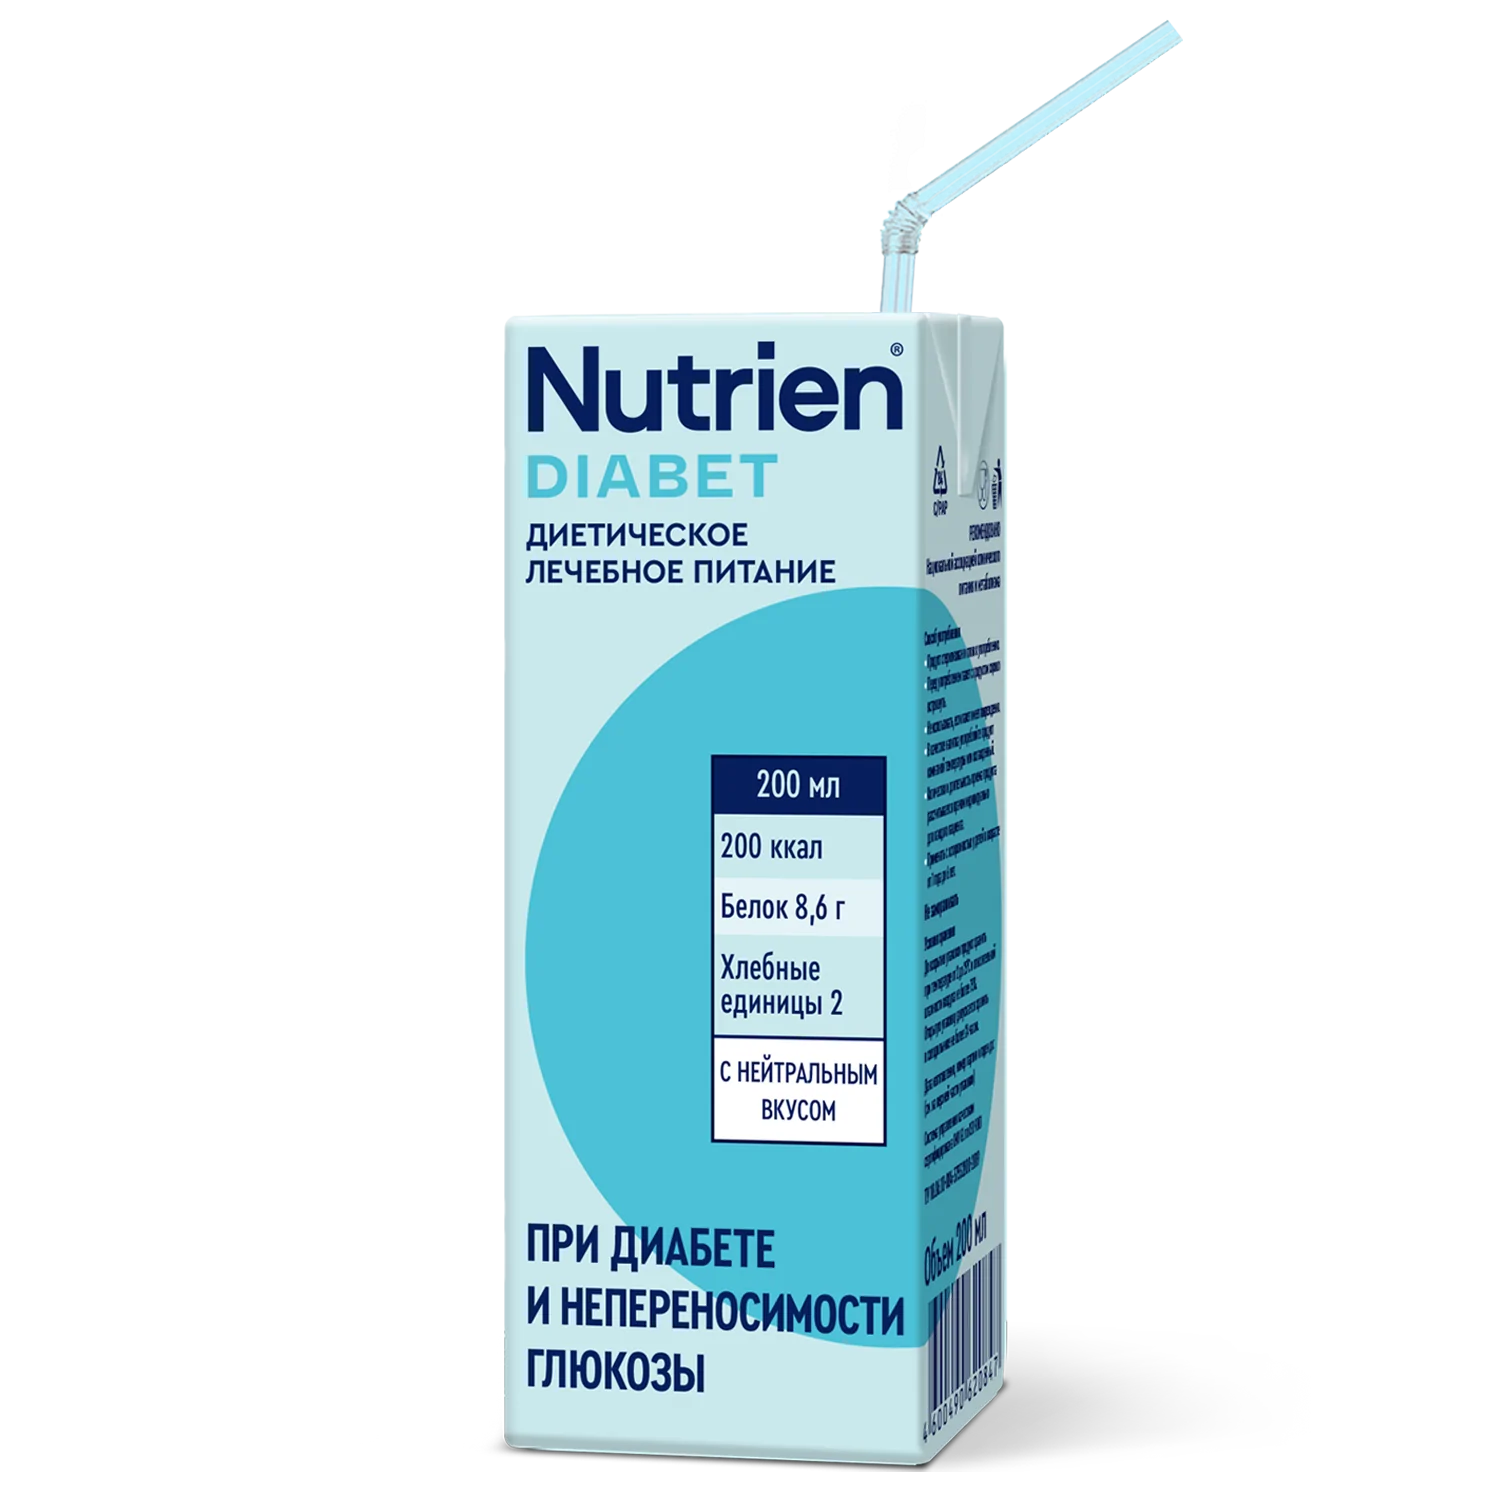 Nutrien Diabet - 1